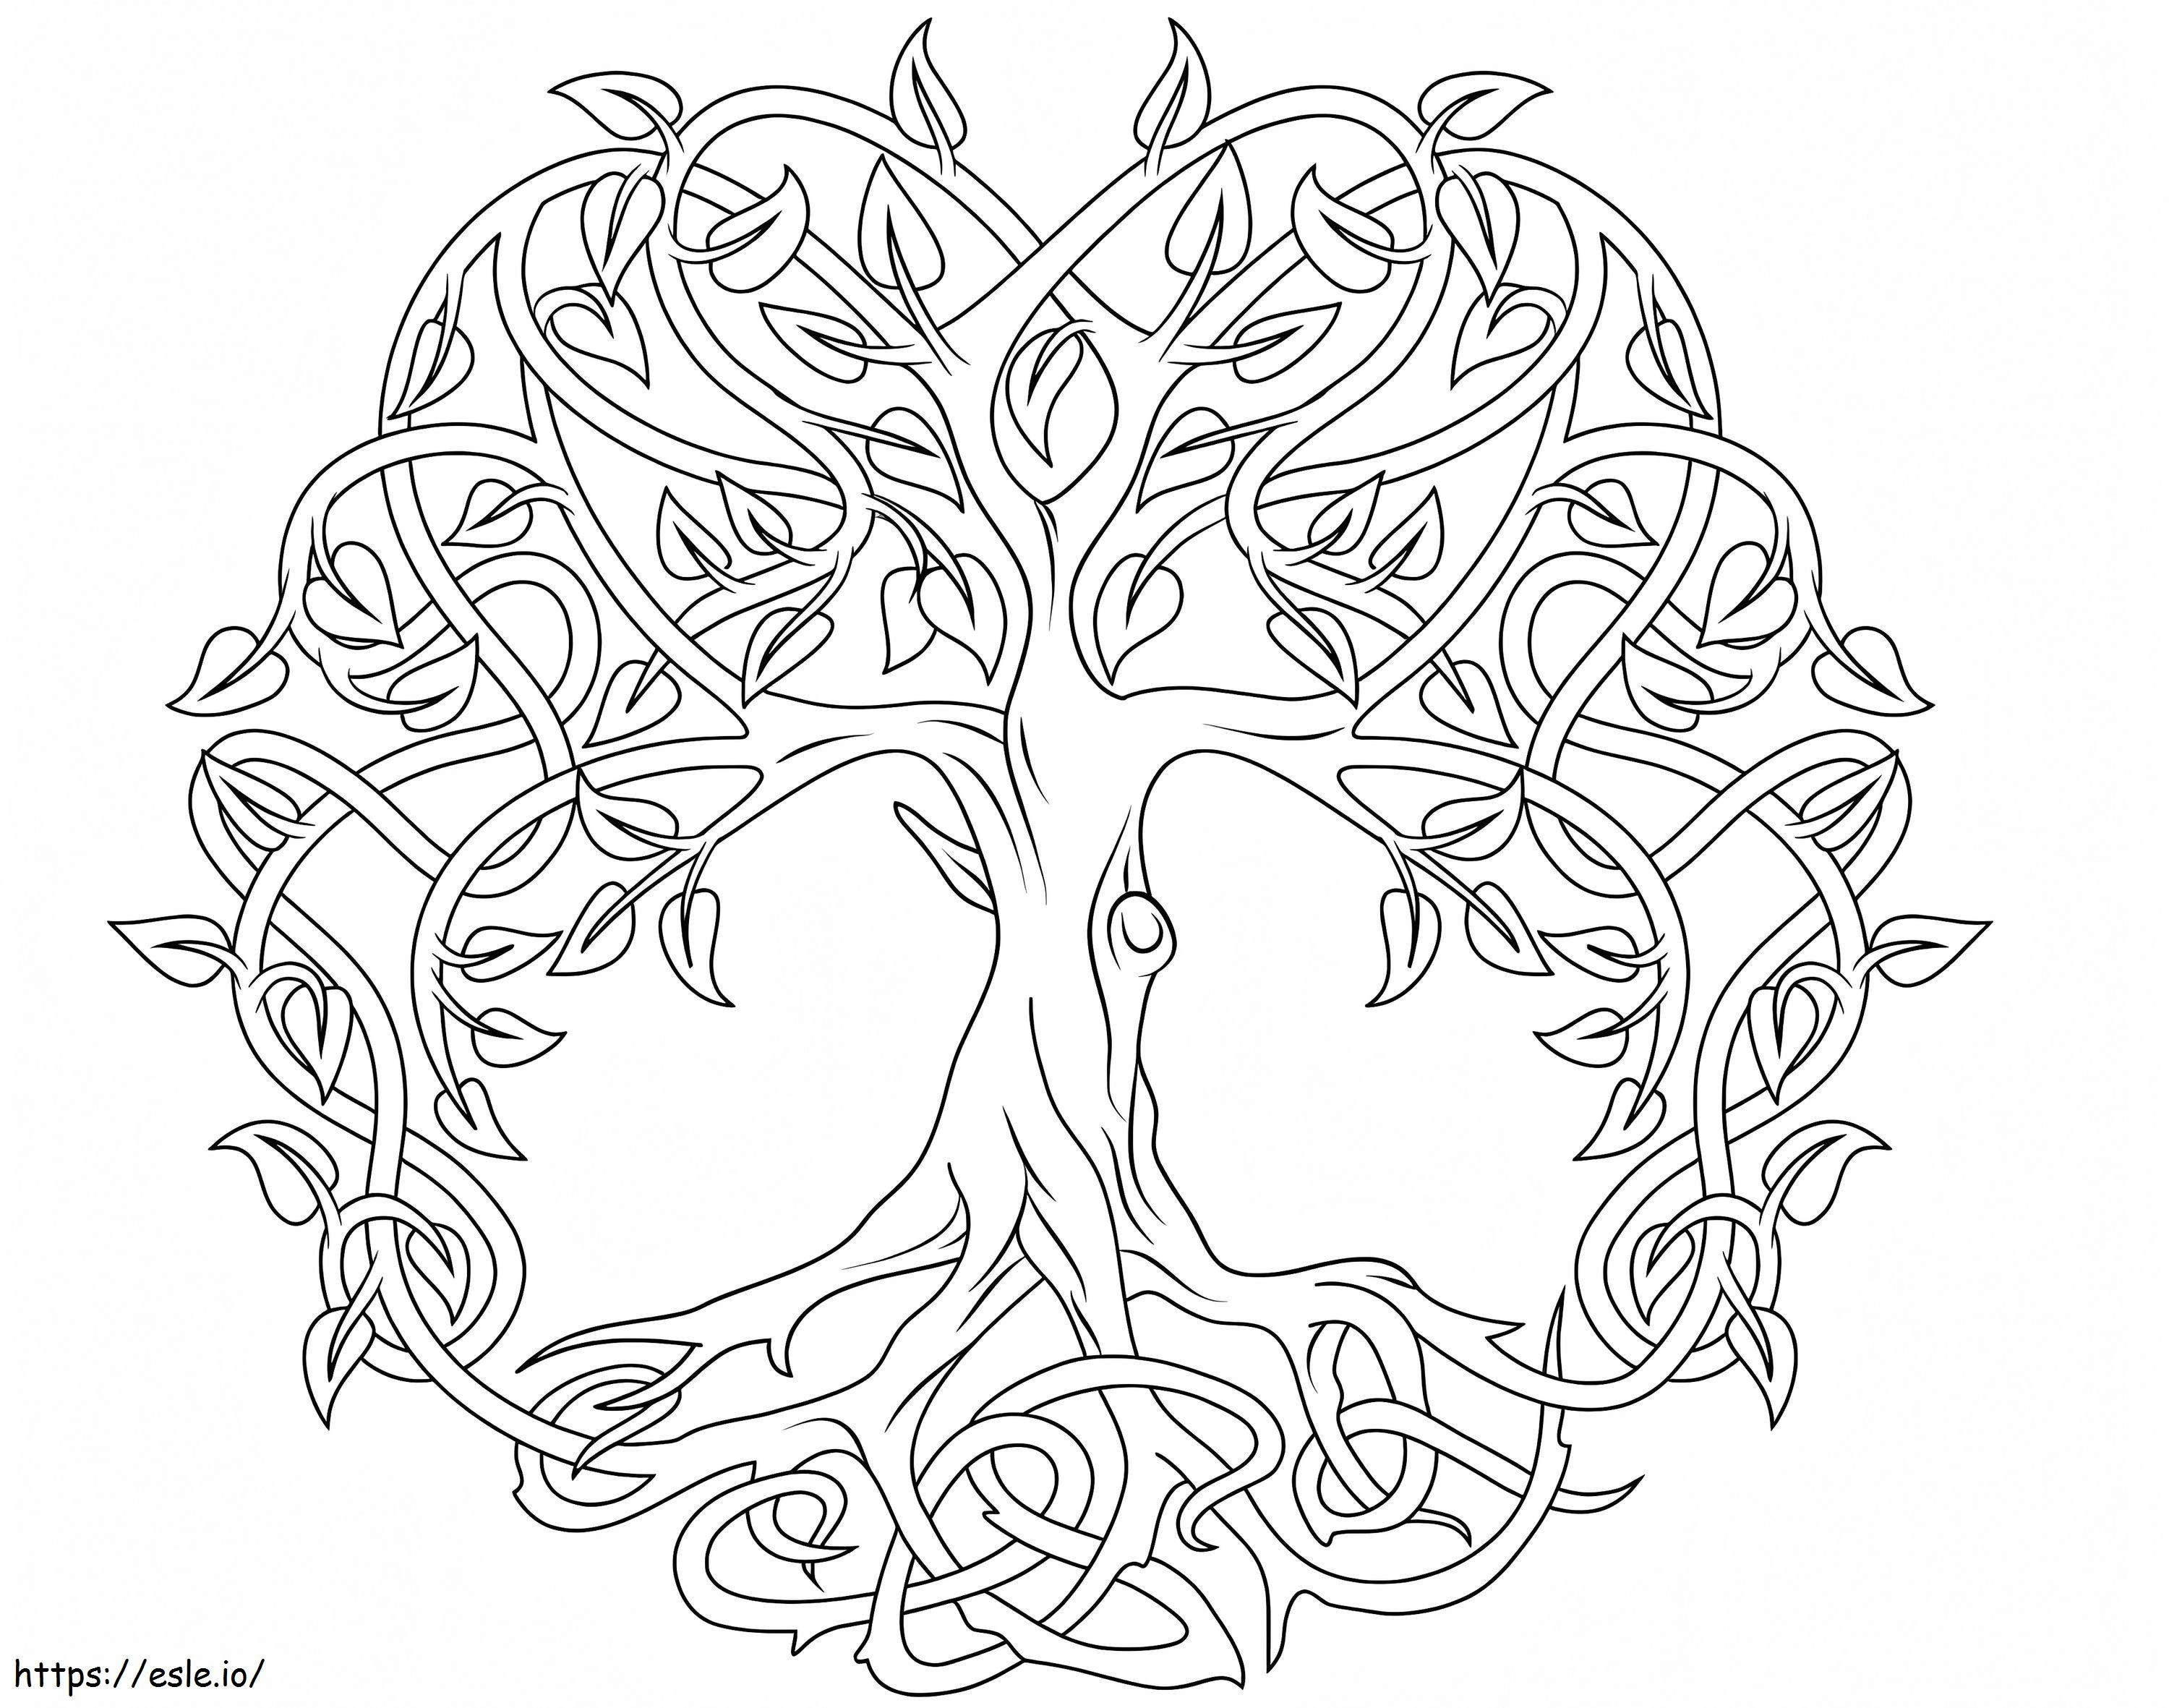 Keltischer Baum des Lebens ausmalbilder